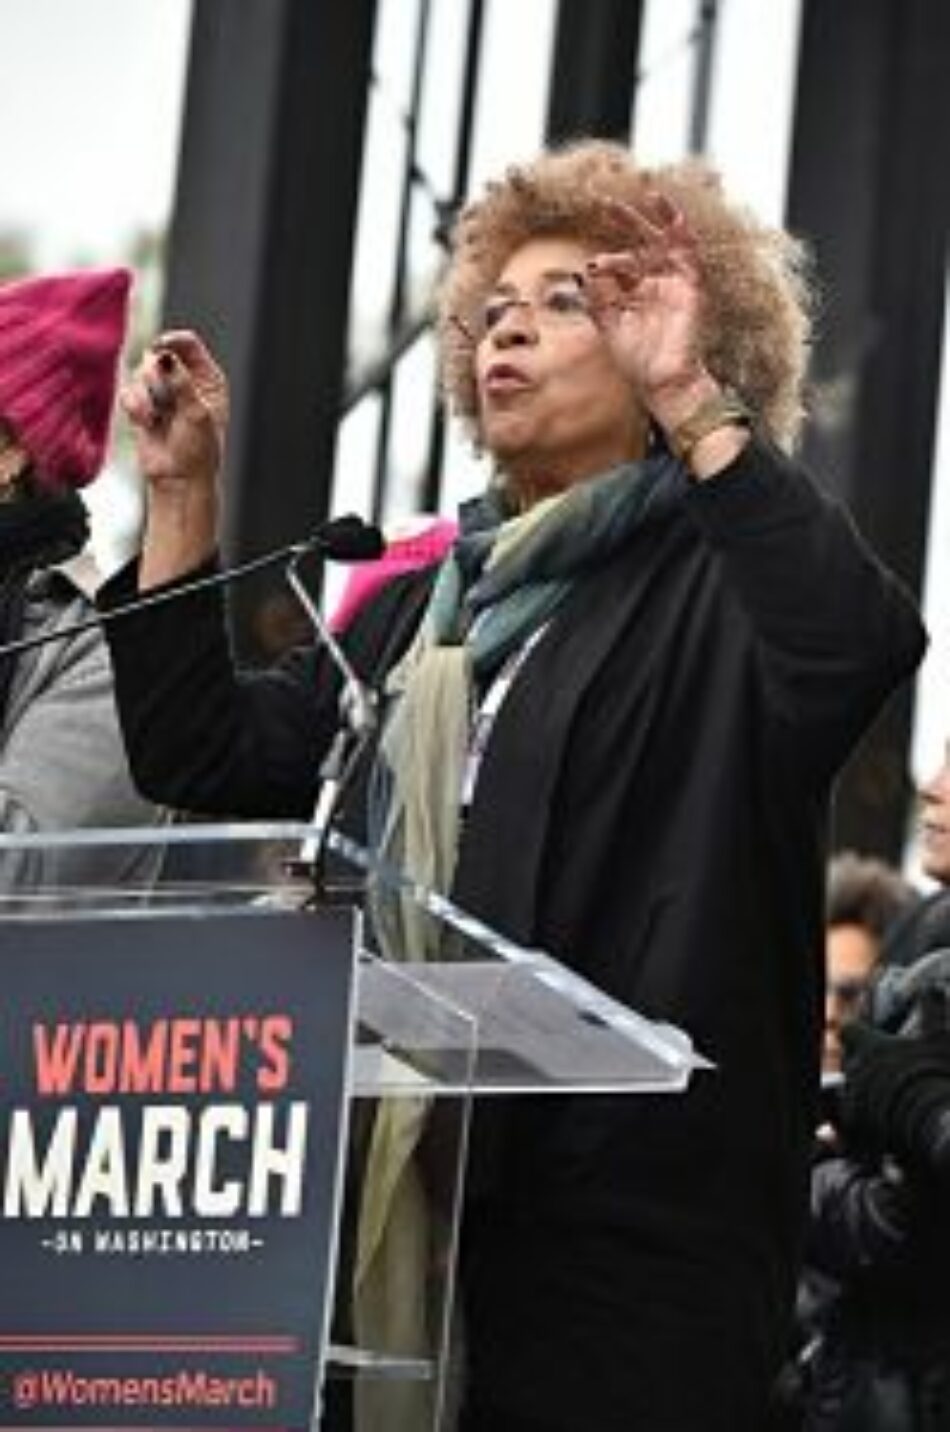 EE.UU. El discurso completo de Angela Davis en la Marcha de las Mujeres